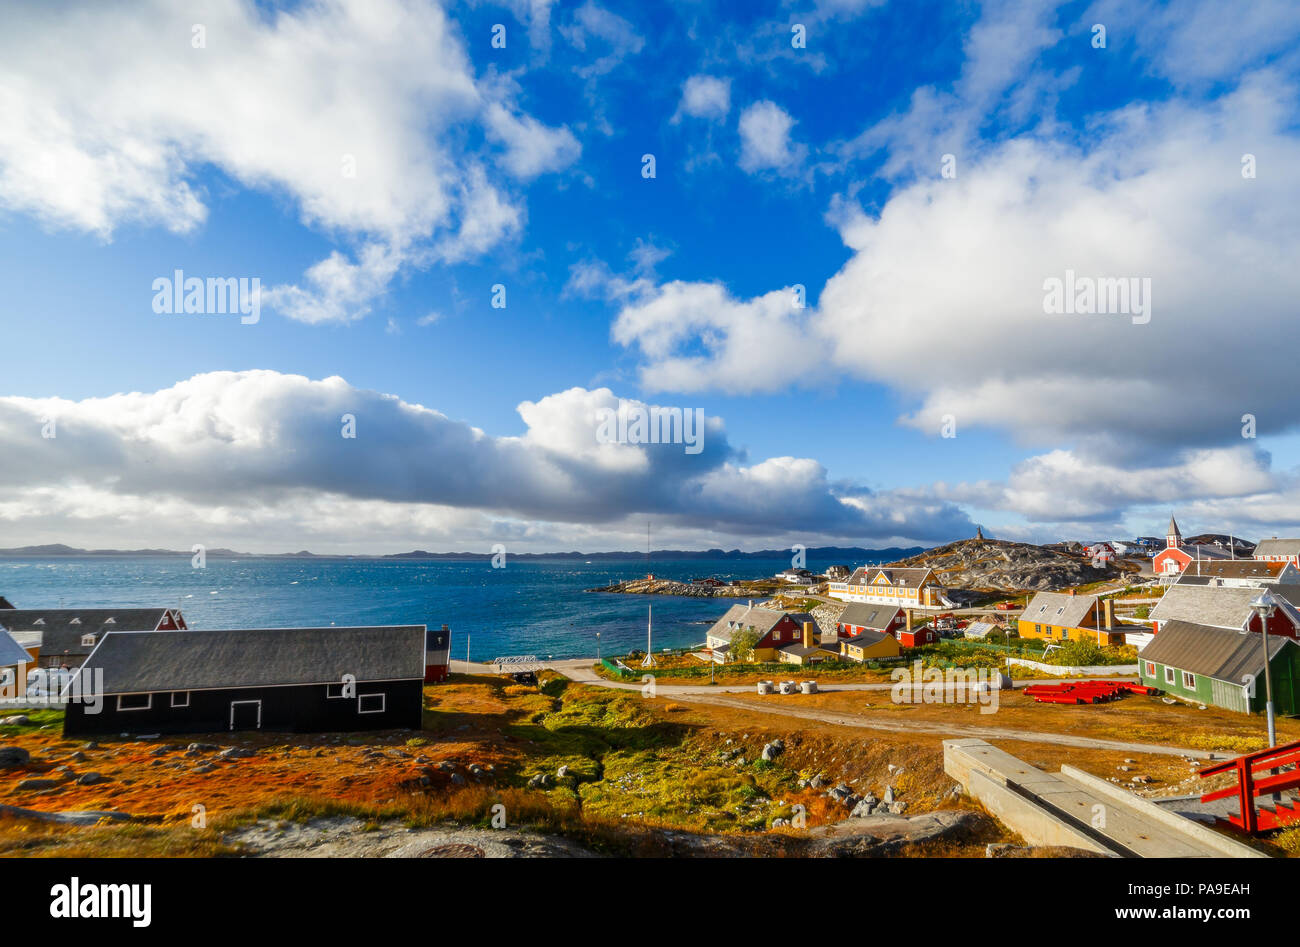 Vieux port de la ville de Nuuk panorama du fjord avec nuages sur le ciel bleu en arrière-plan, Groenland Banque D'Images